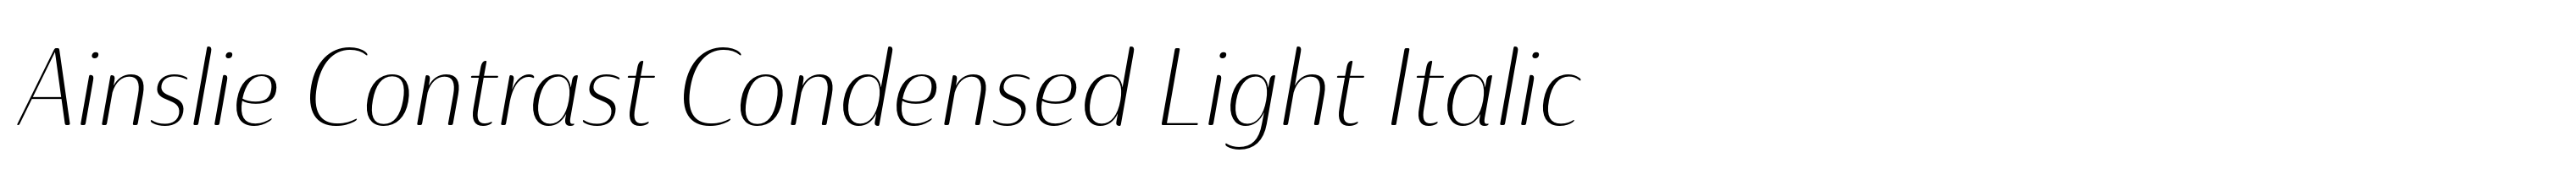 Ainslie Contrast Condensed Light Italic